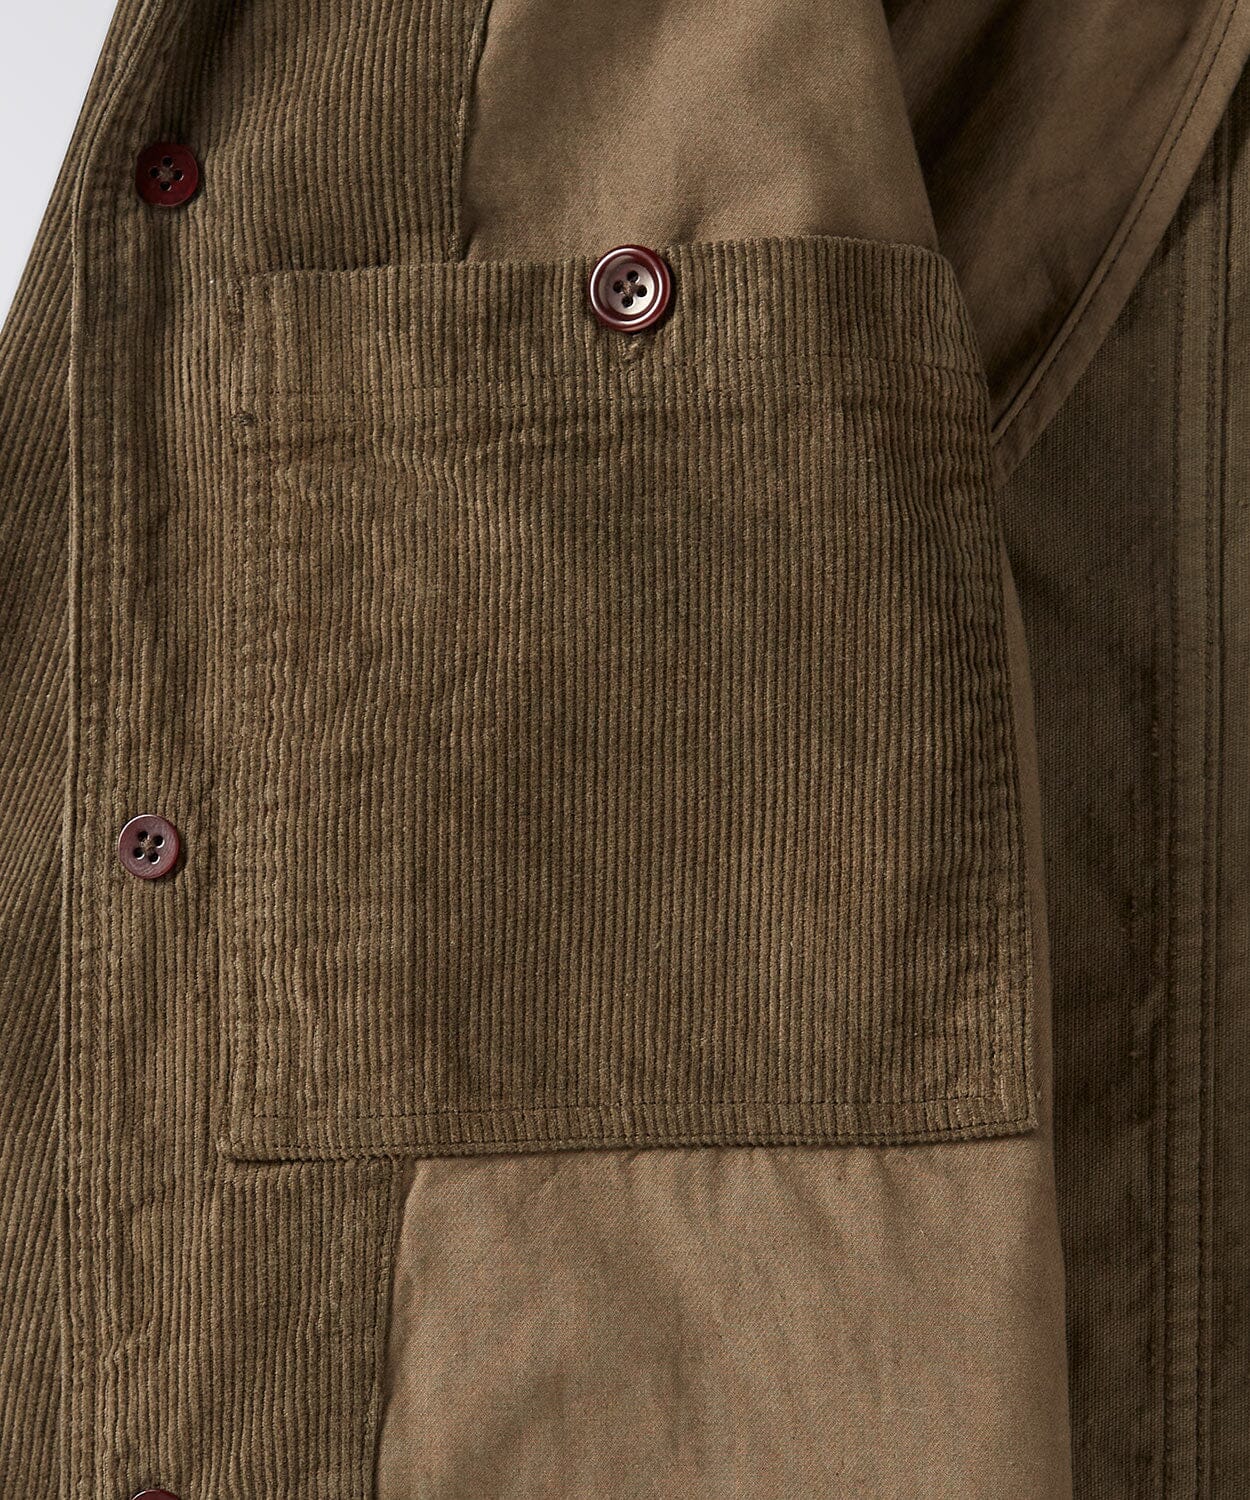 pocket of a mens corduroy coat